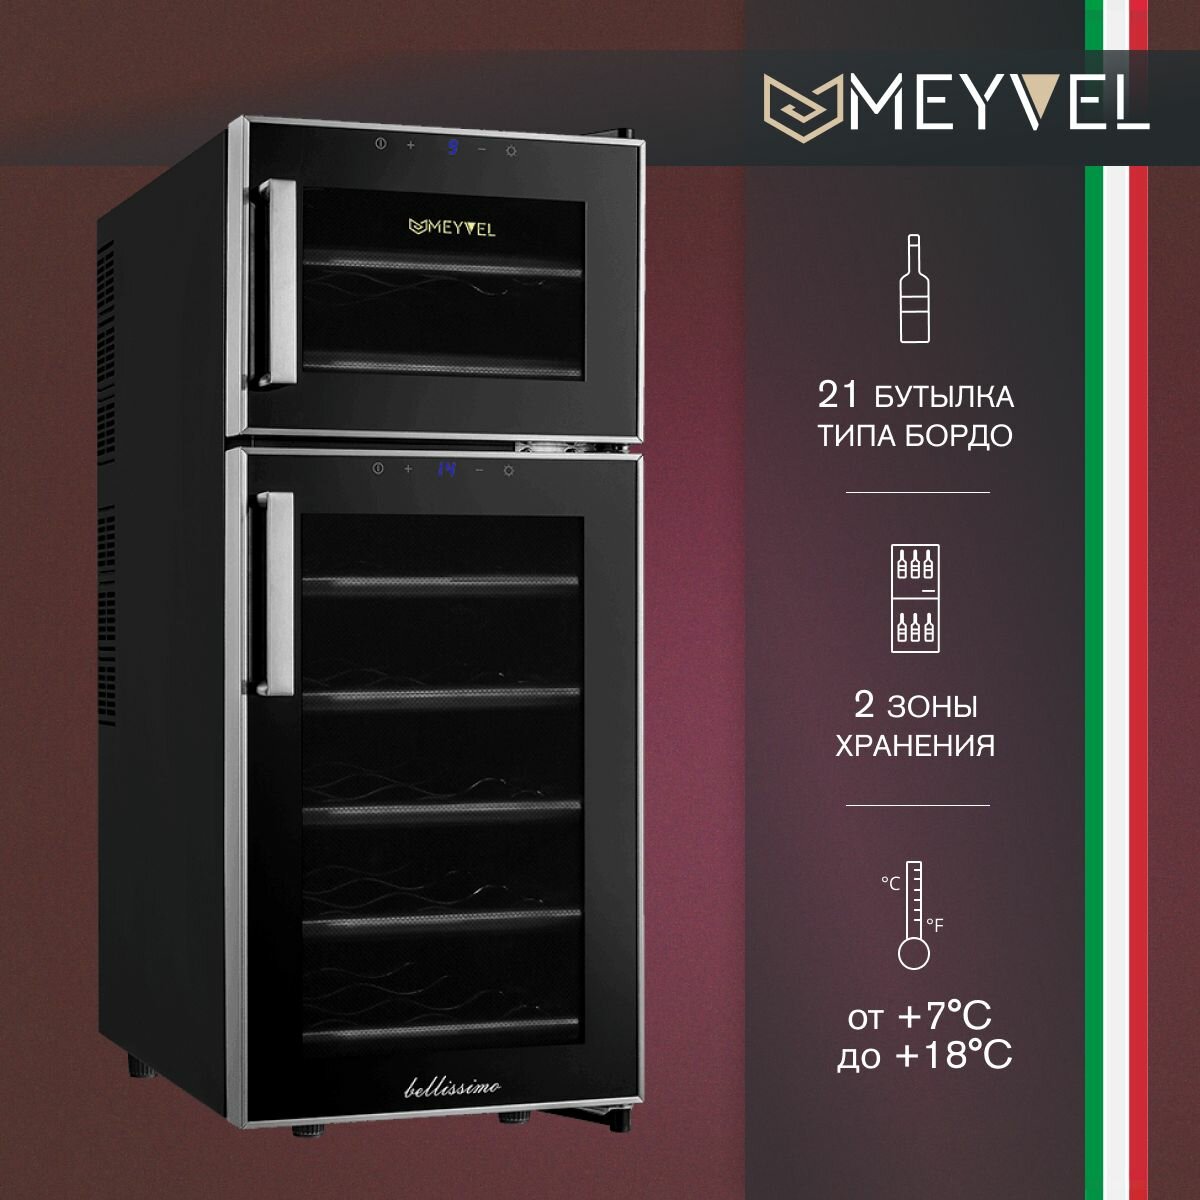 Винный холодильный шкаф Meyvel MEYVEL MV21-BF2 (easy) термоэлектрический (отдельностоящий холодильник для вина на 21 бутылку)